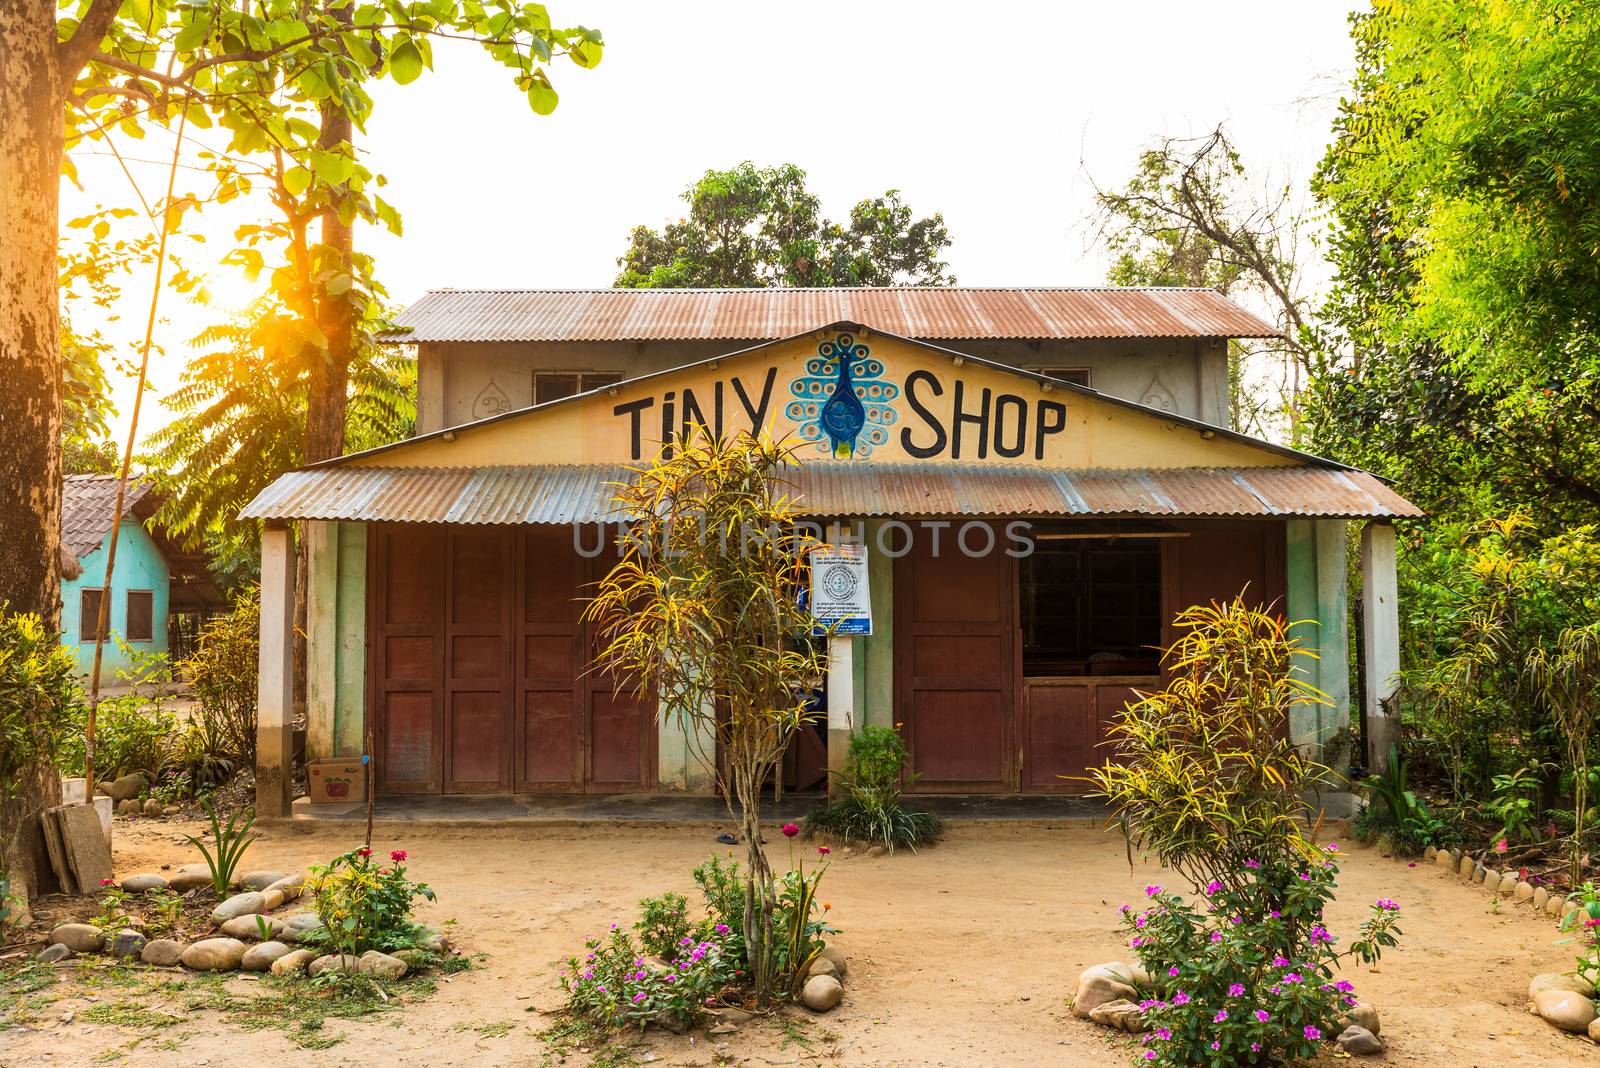 KAWASOTI, NEPAL - CIRCA MAY 2019: A small shop called Tiny Shop in Chitwan region.